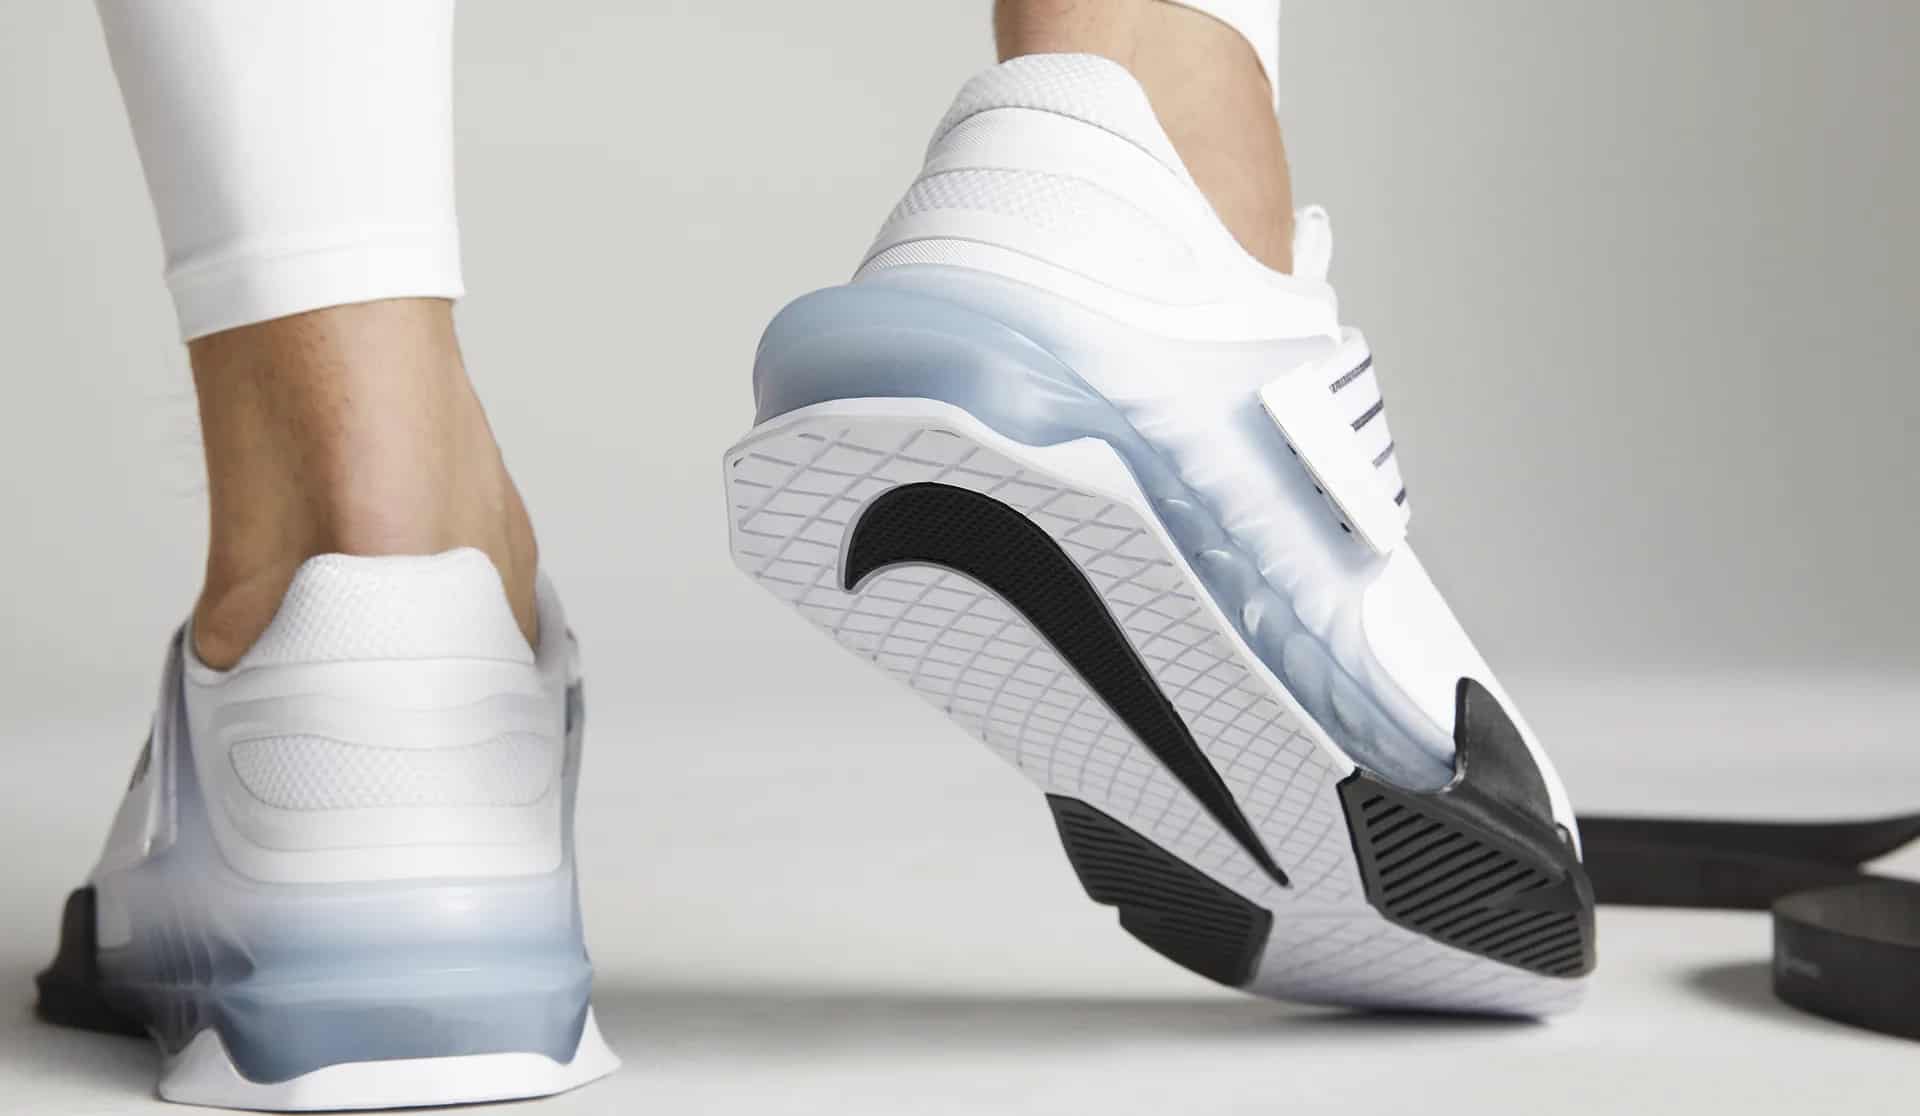 Nike Savaleos worn heel